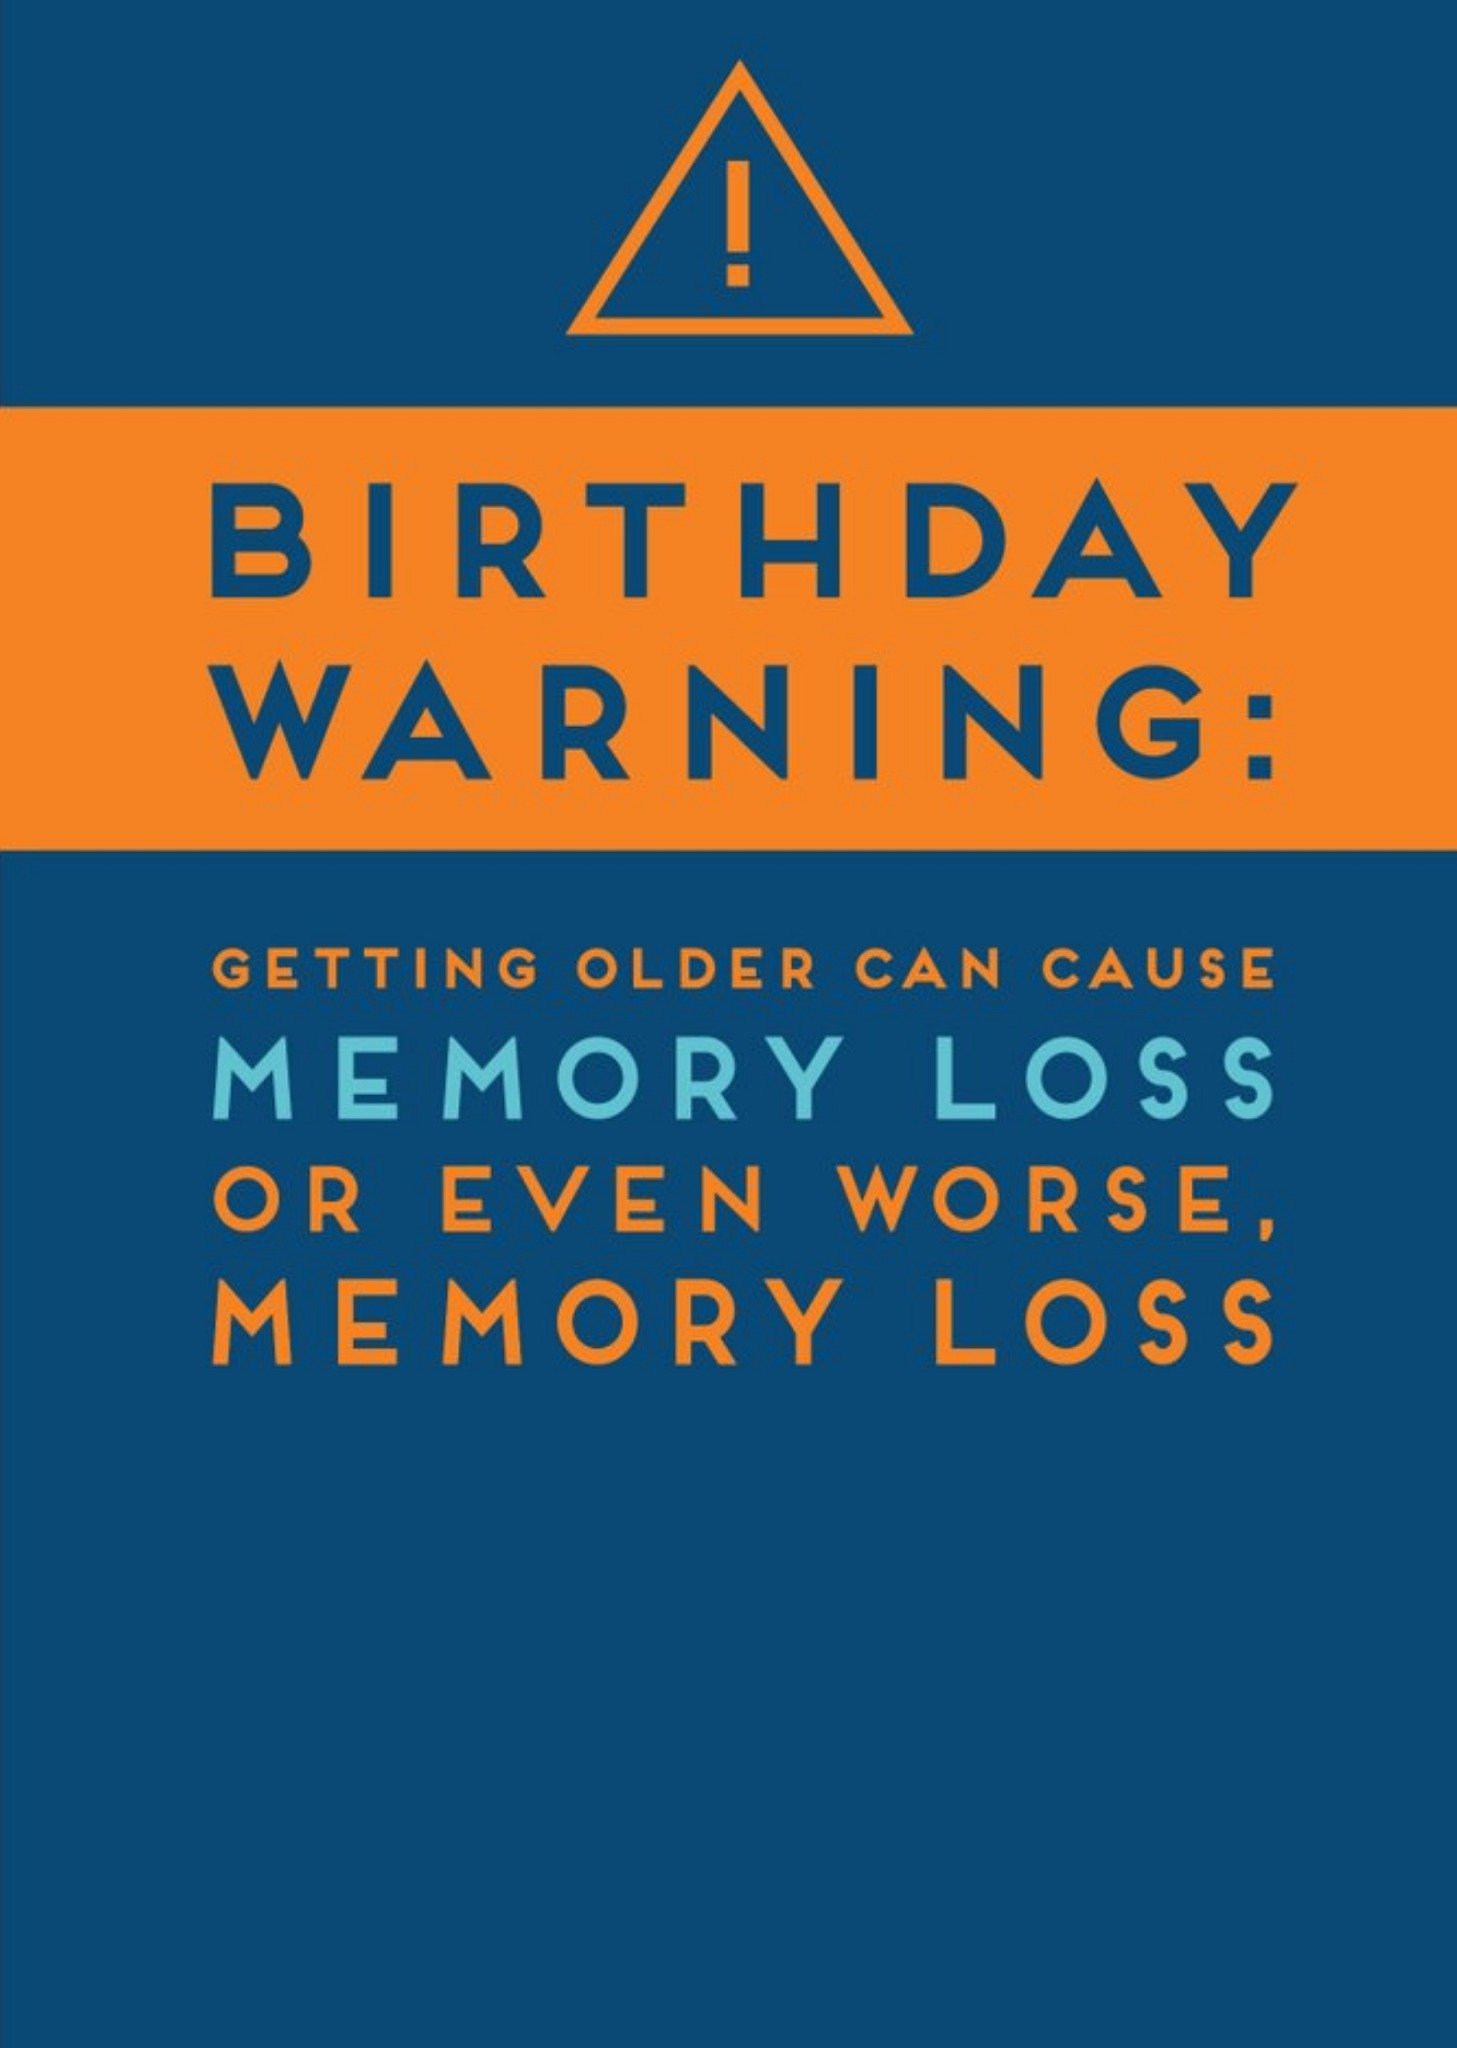 Moonpig Paperlink Birthday Warning Card Ecard